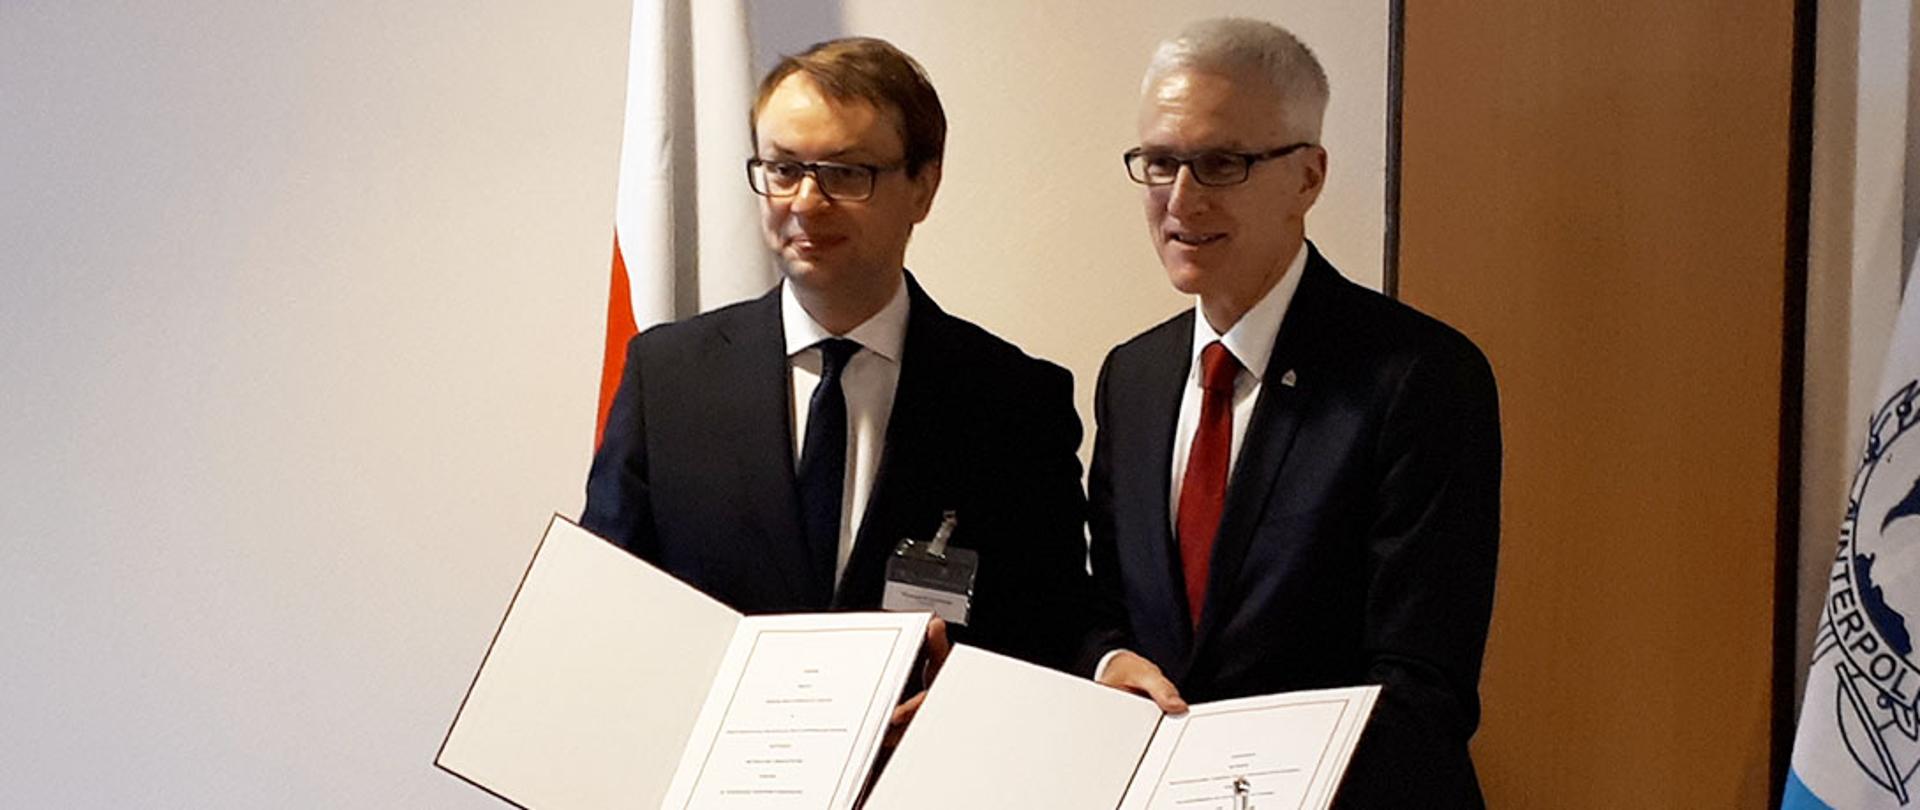 Wiceminister Krzysztof Kozłowski wziął udział w podpisaniu umowy dotyczącej organizacji Międzynarodowej konferencji Interpolu, która odbędzie się w Polsce.